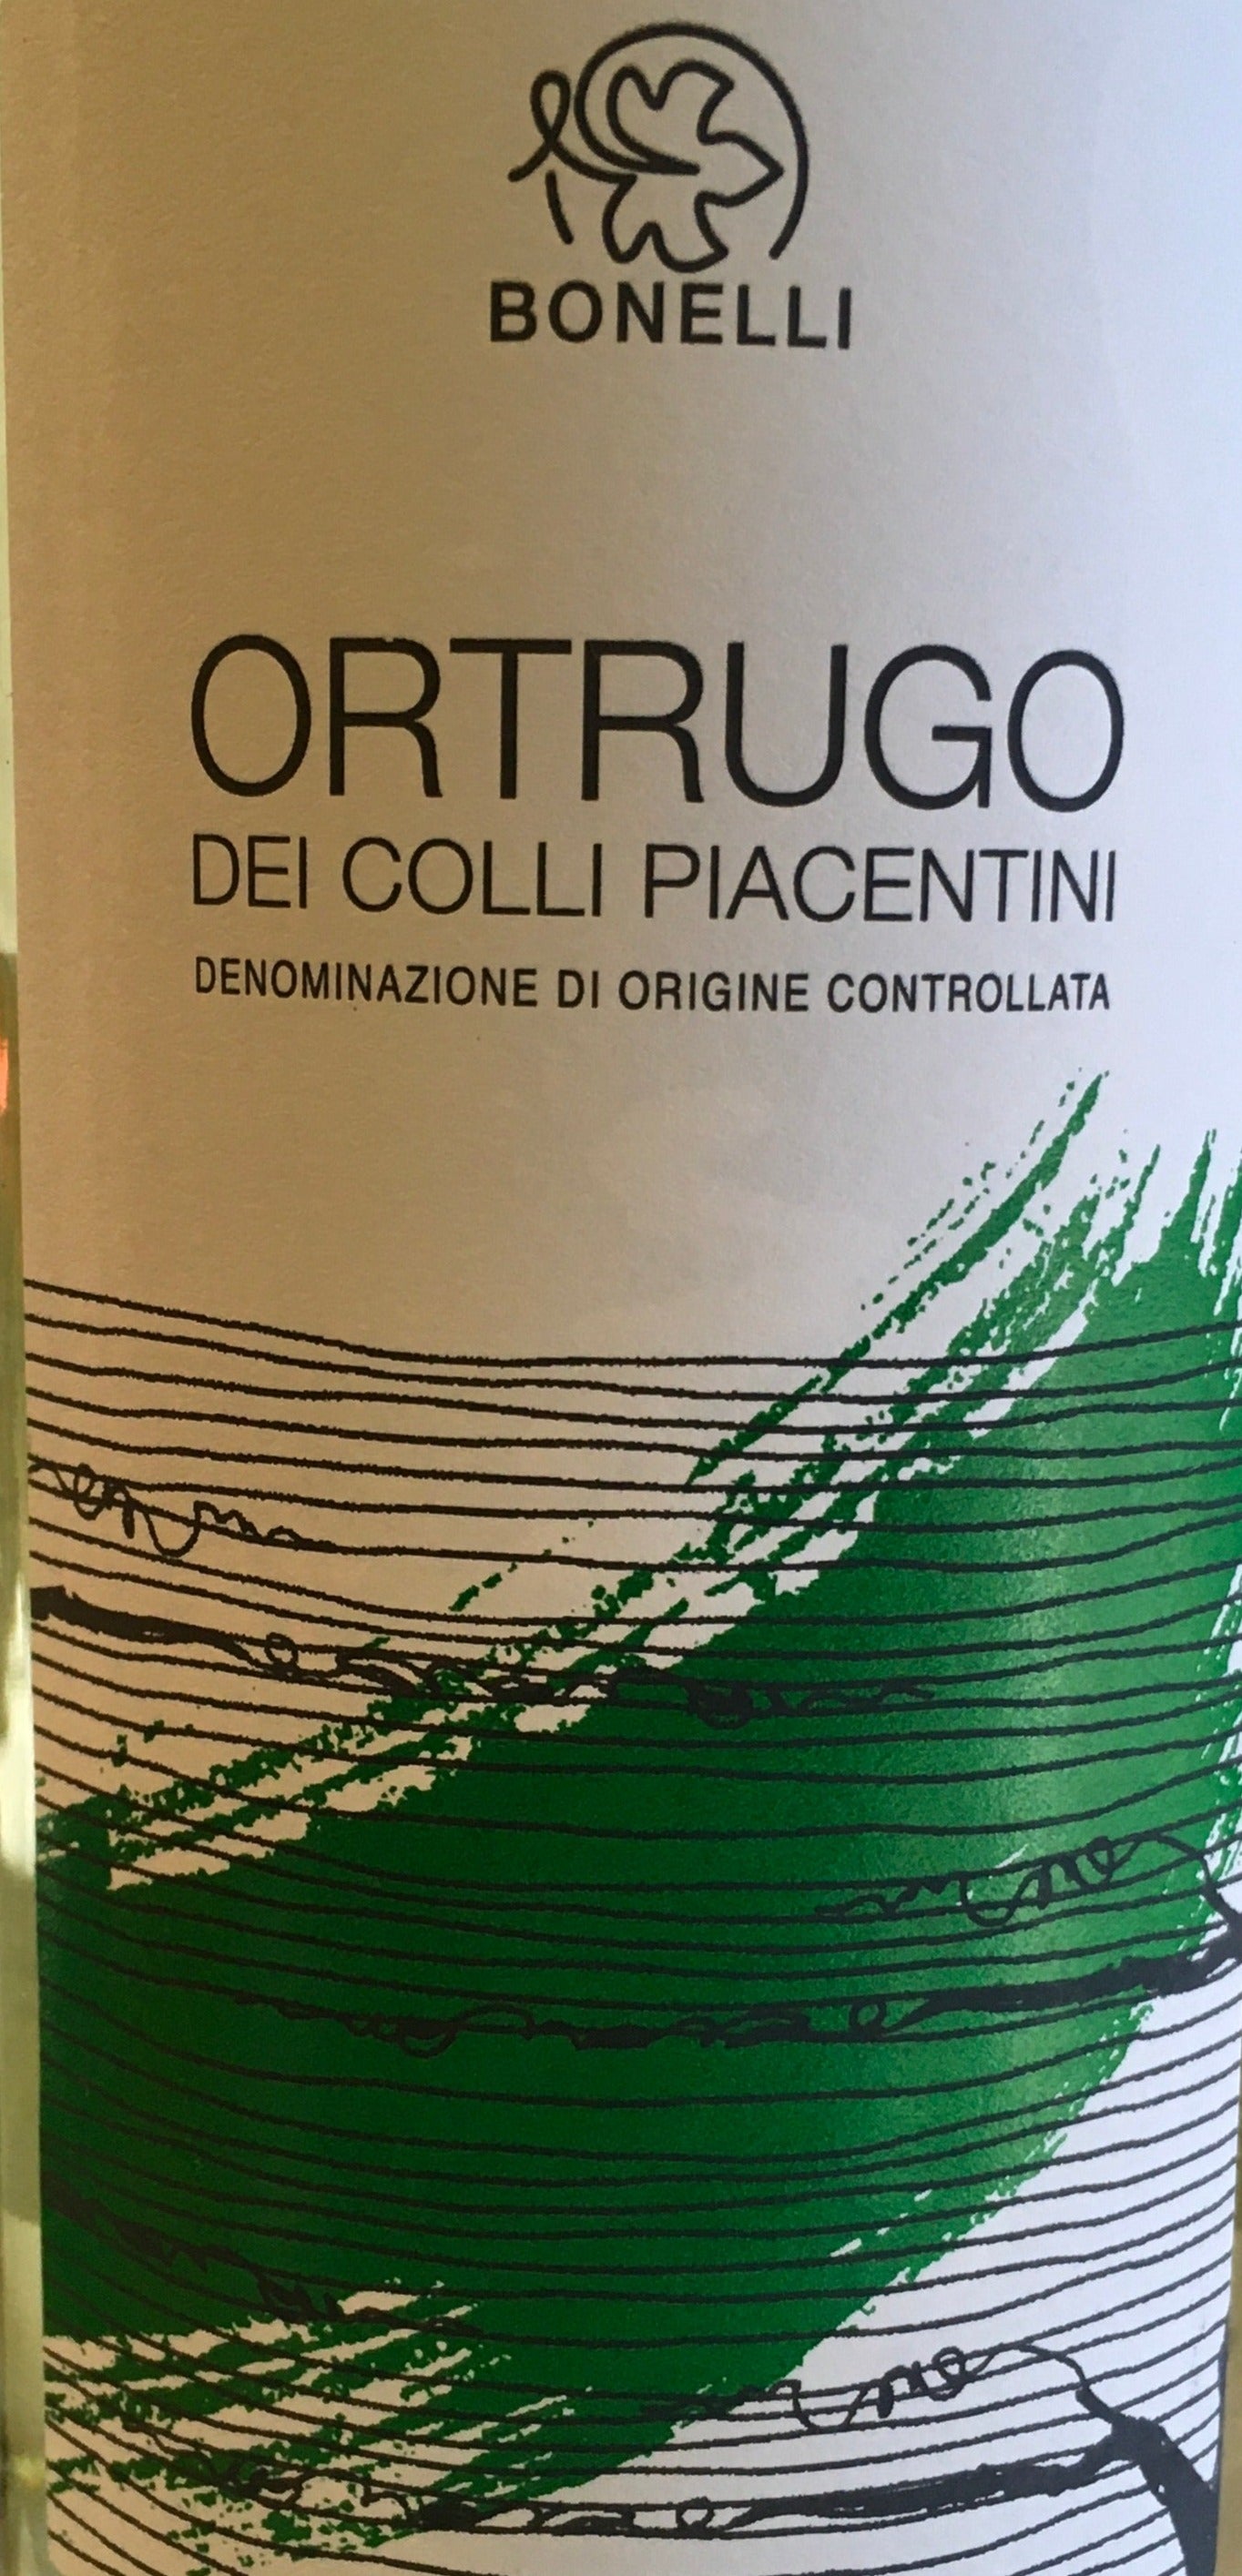 Bonelli - Ortrugo Wine Feed – The Colli Piacentini dei DOC